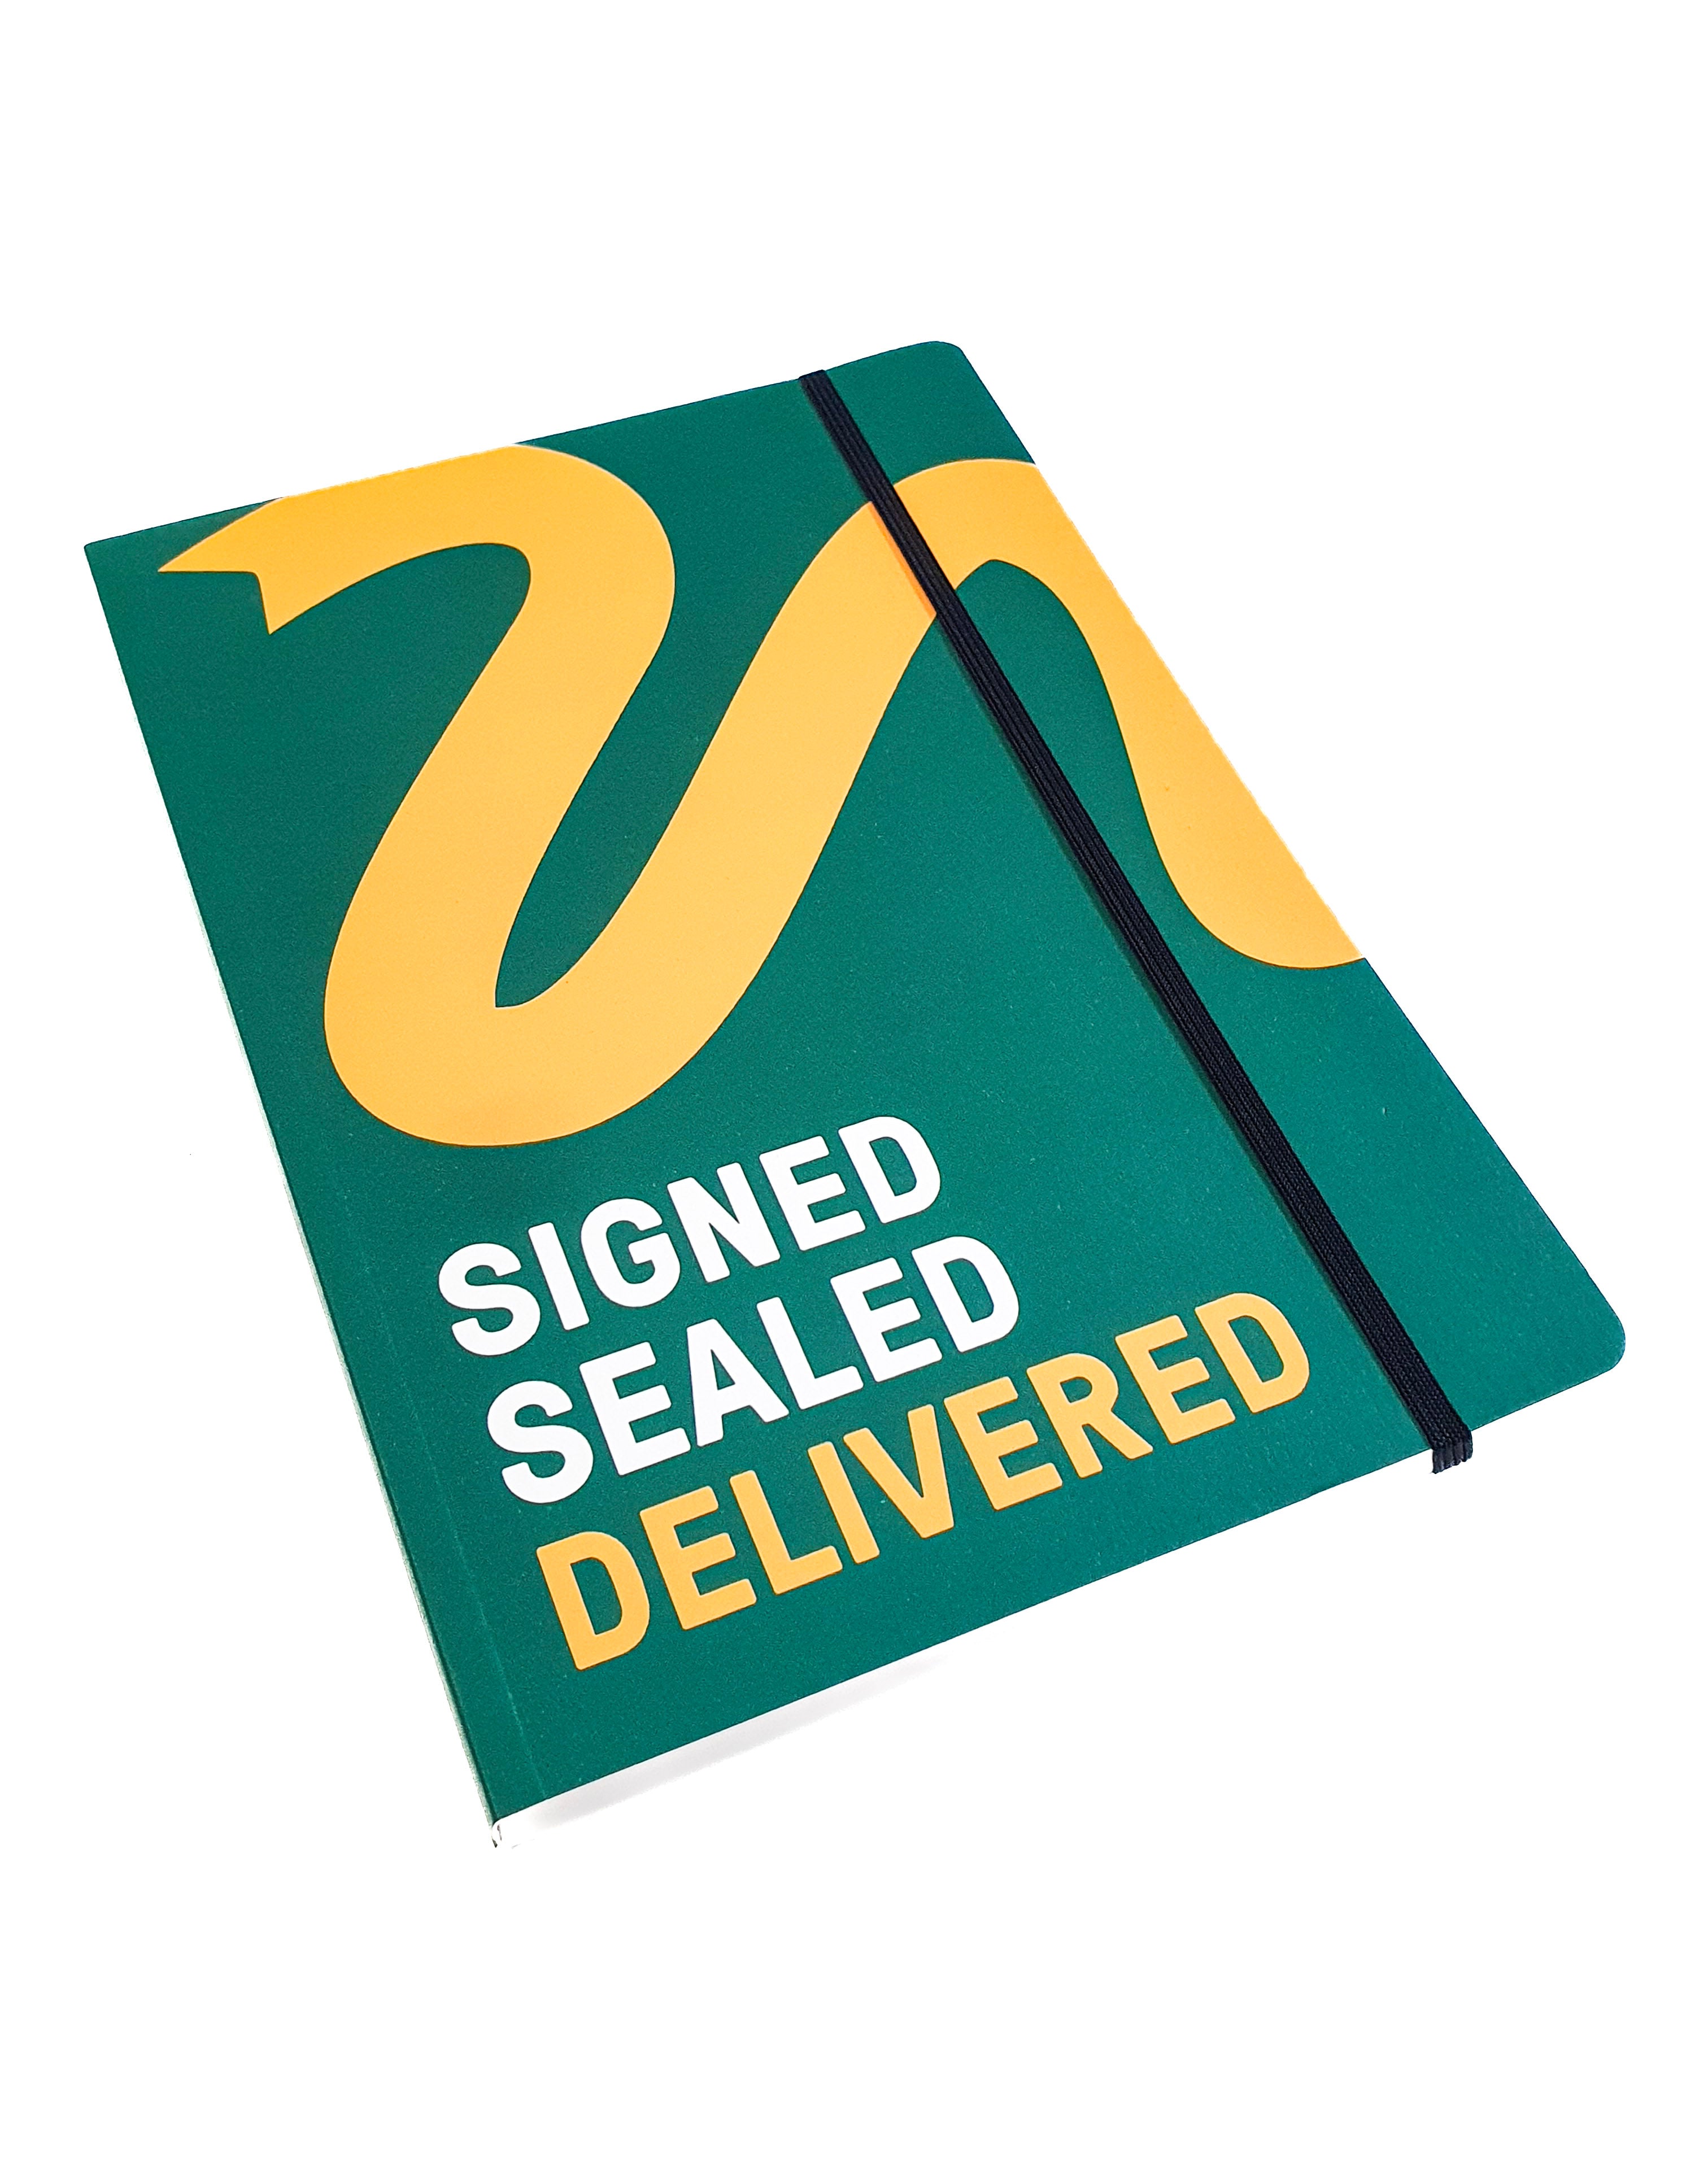 Signed, Sealed, Delivered Journal